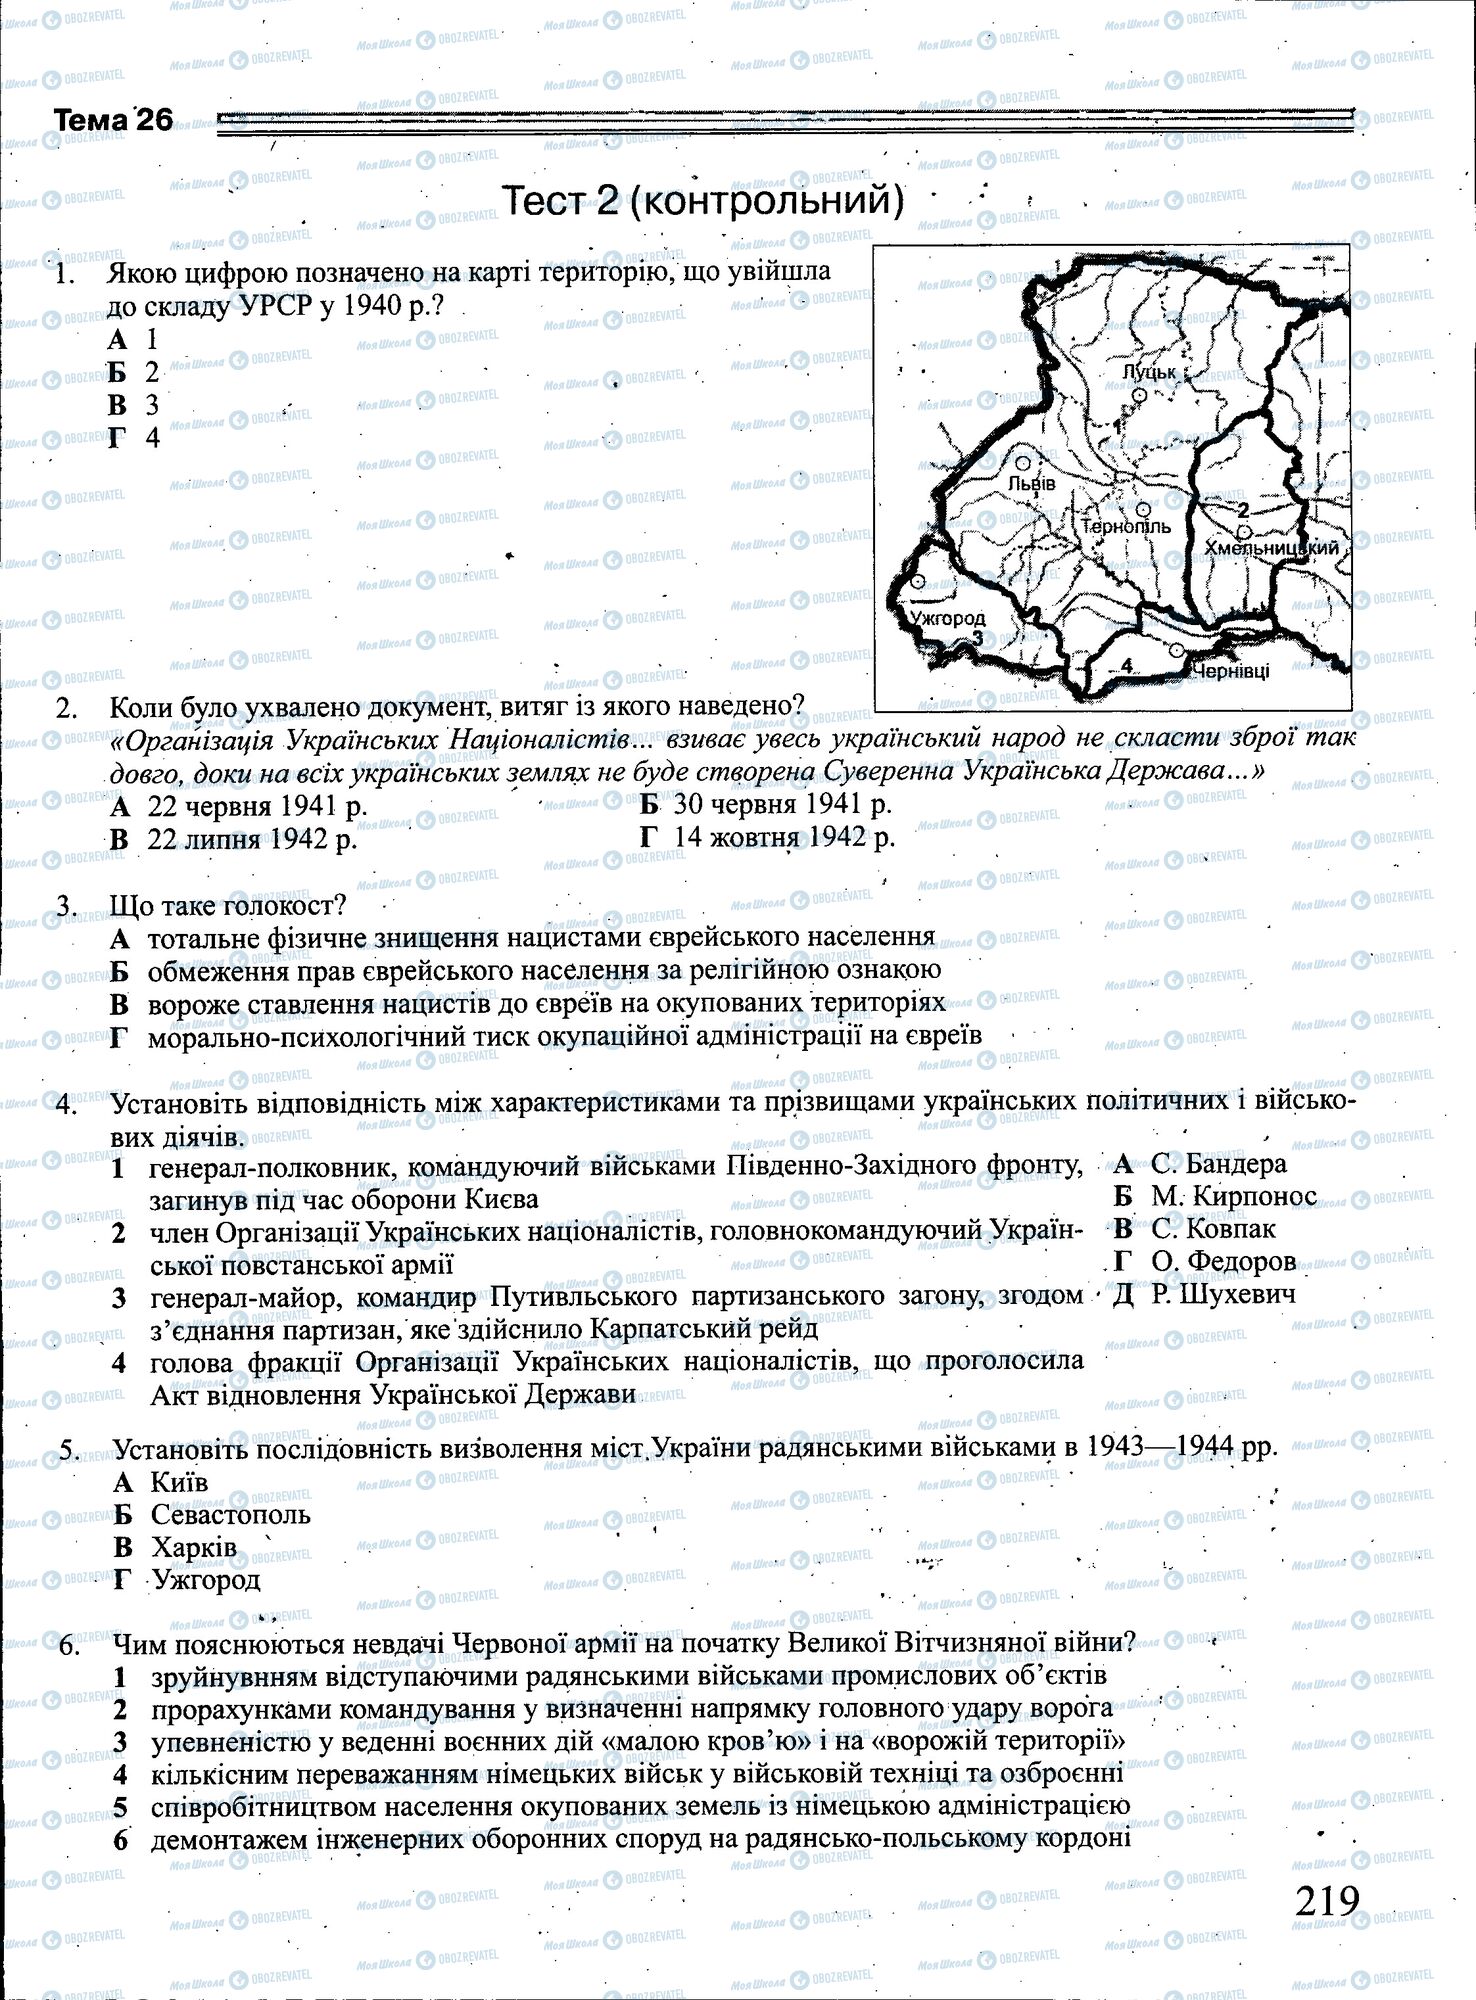 ЗНО История Украины 11 класс страница 219